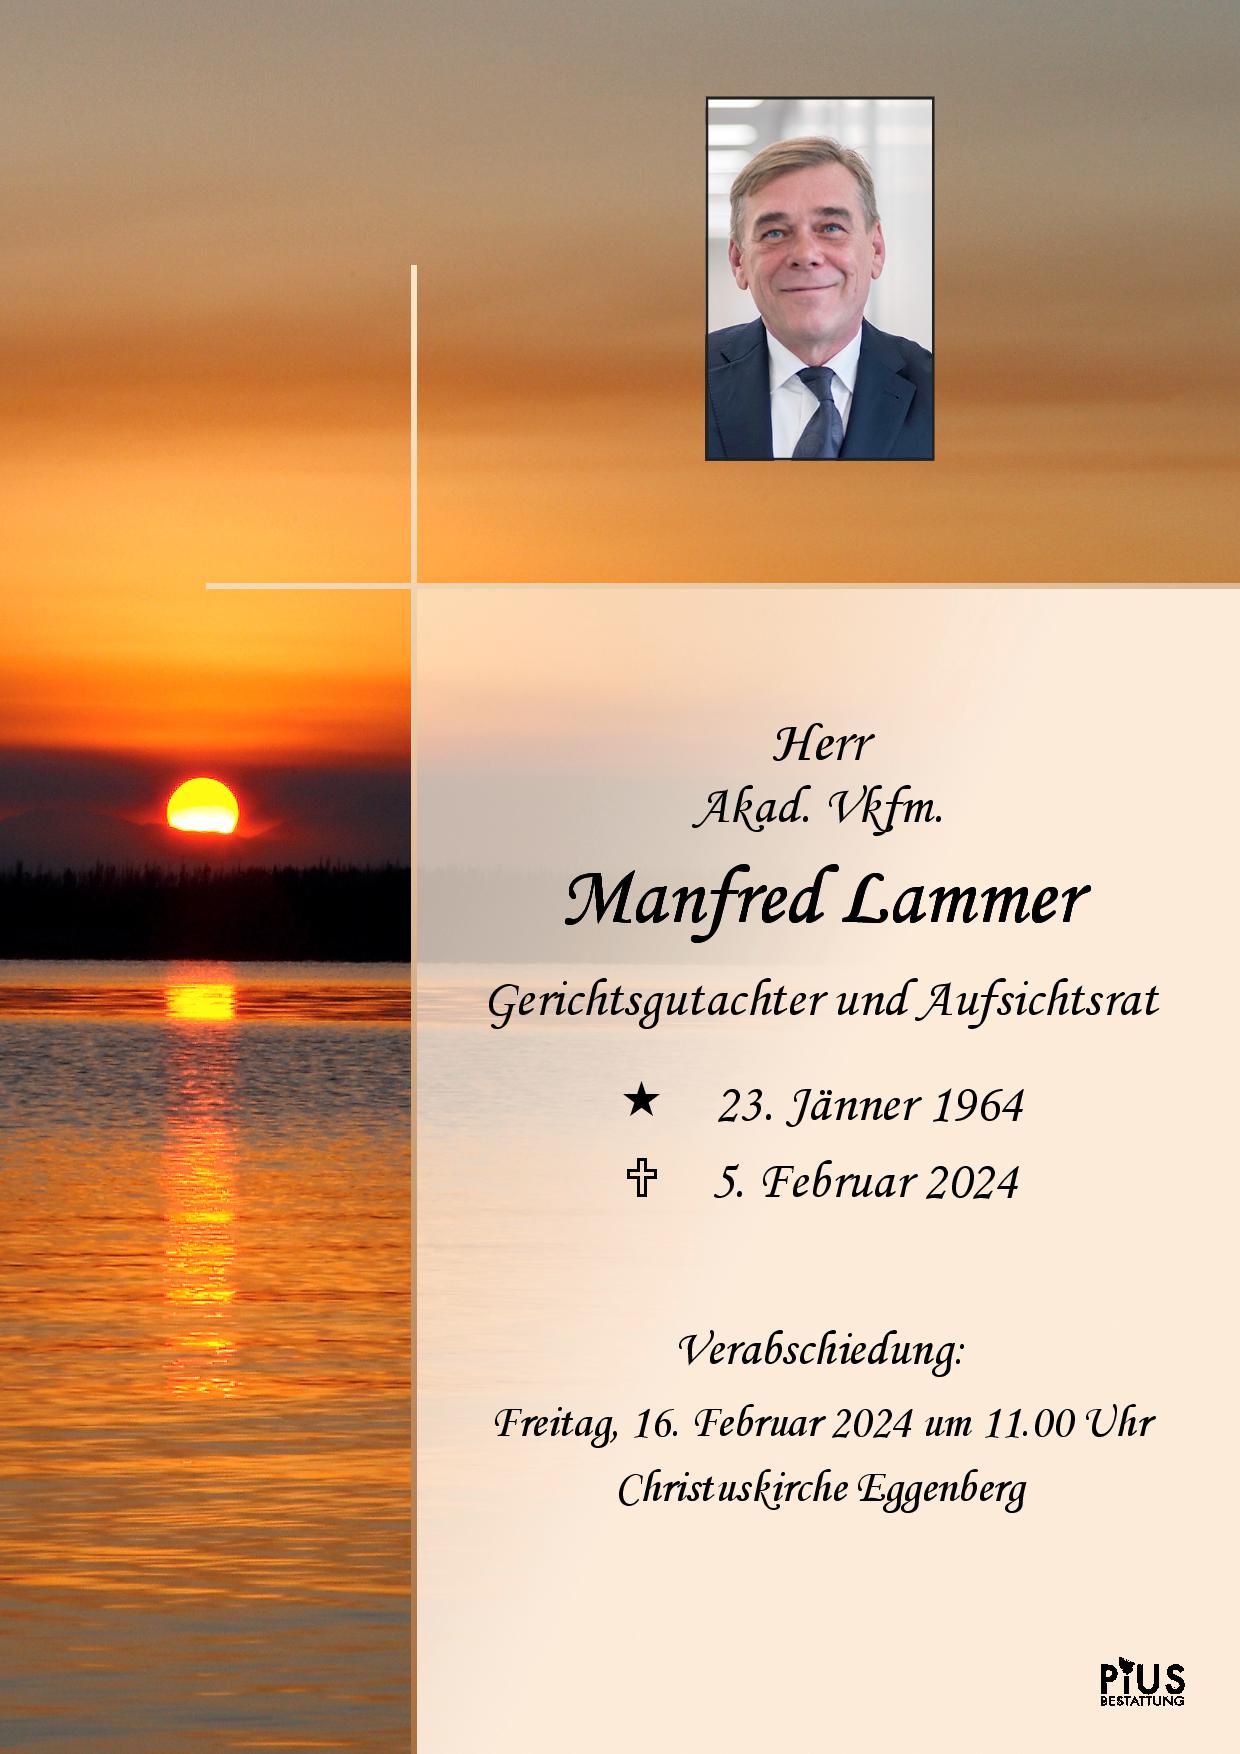 Manfred Lammer